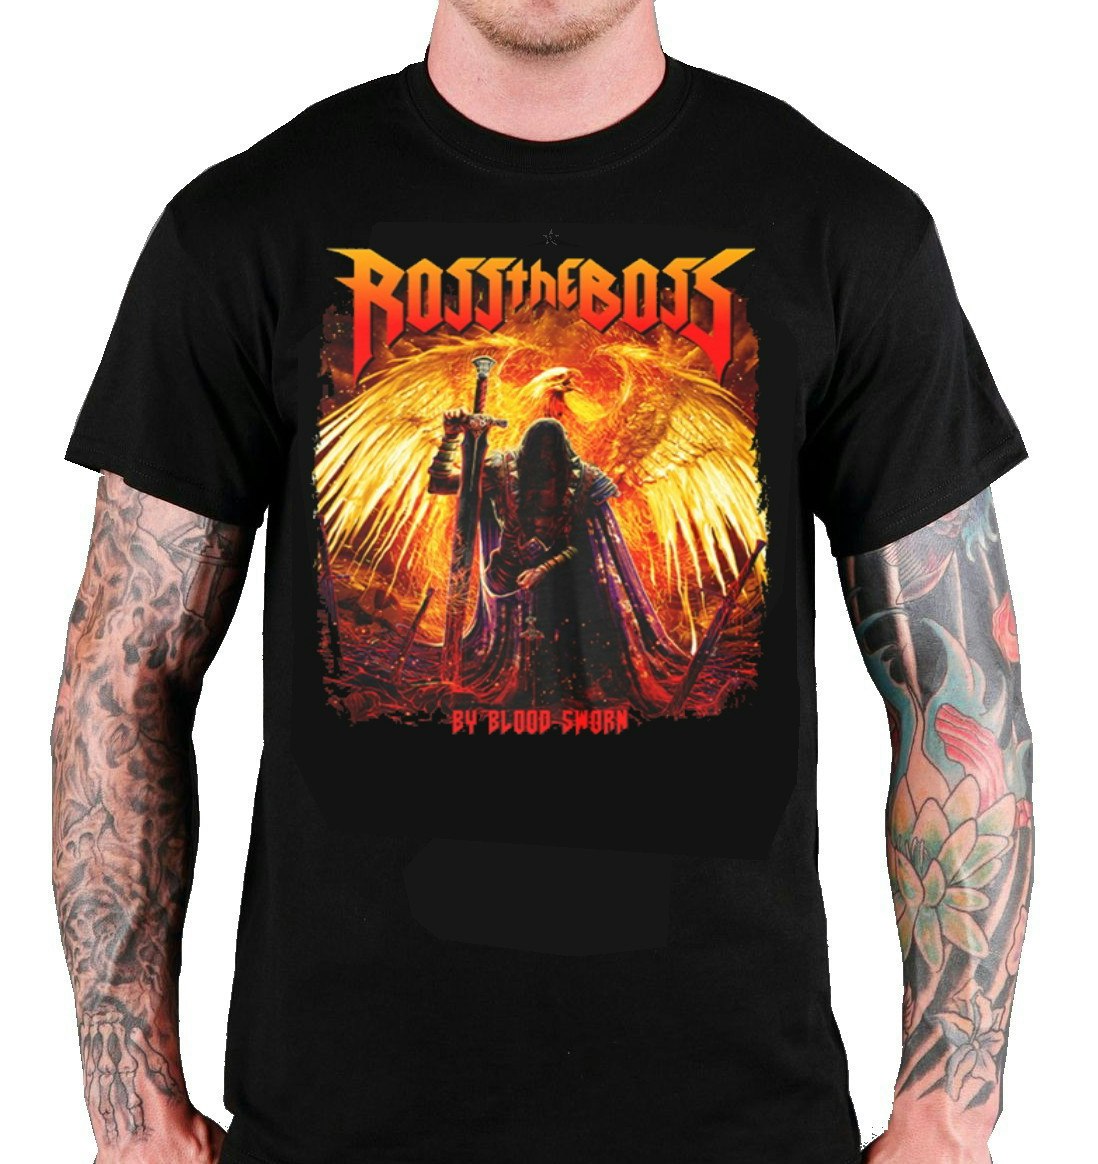 ROSS THE BOSS BY BLOOD SWORN T-Shirt